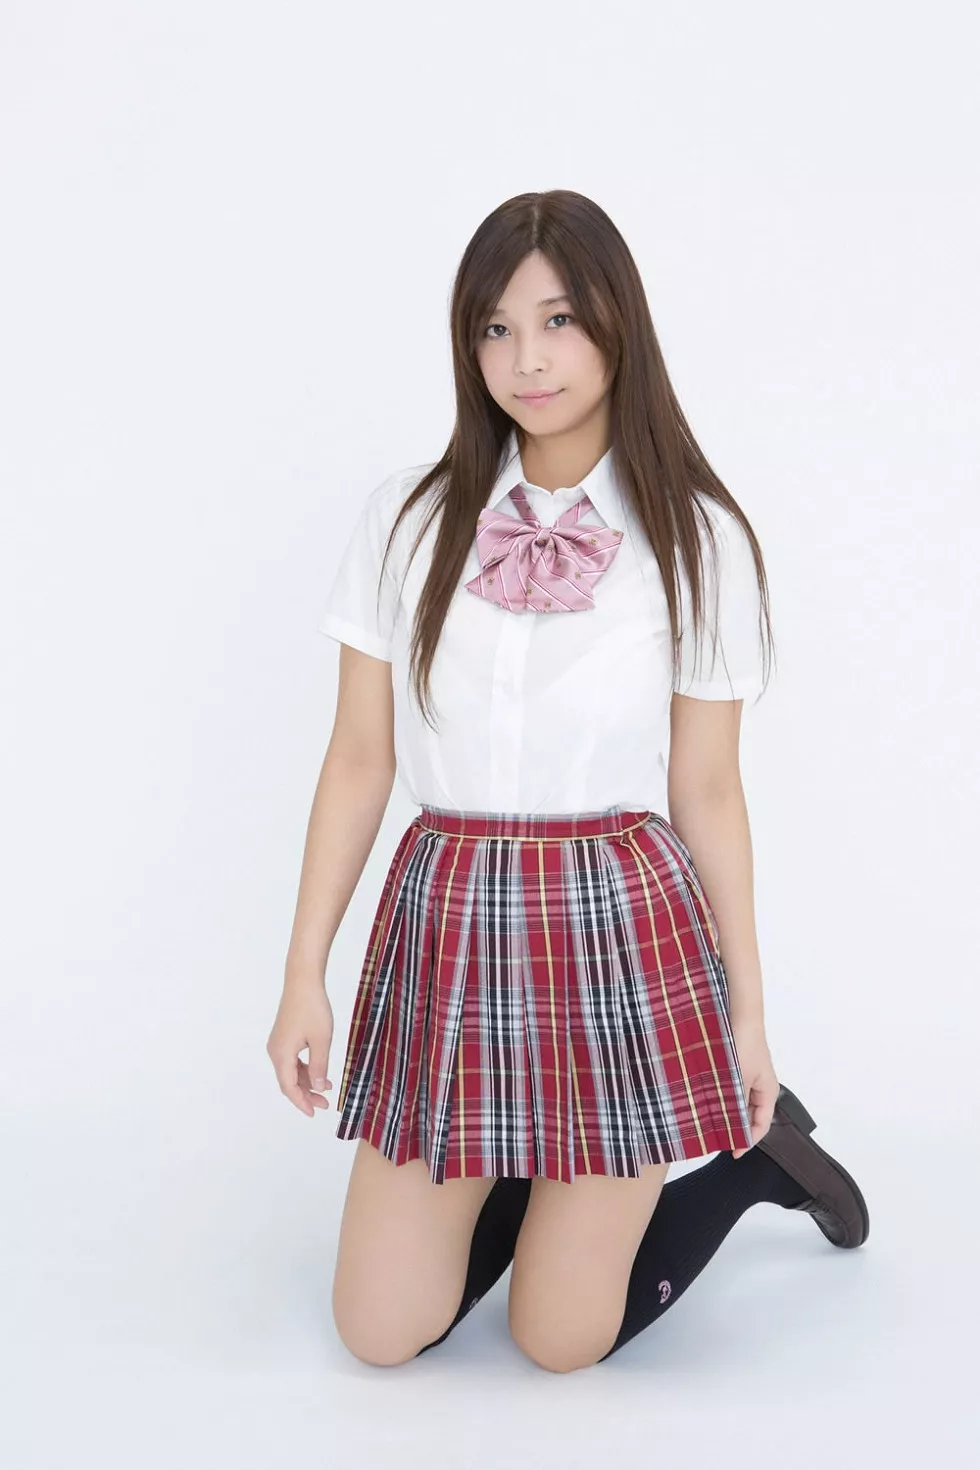 Xgyw.Org_[YS Web]Vol.673_日本写真偶像中村真理23岁女子学生内衣写真49P